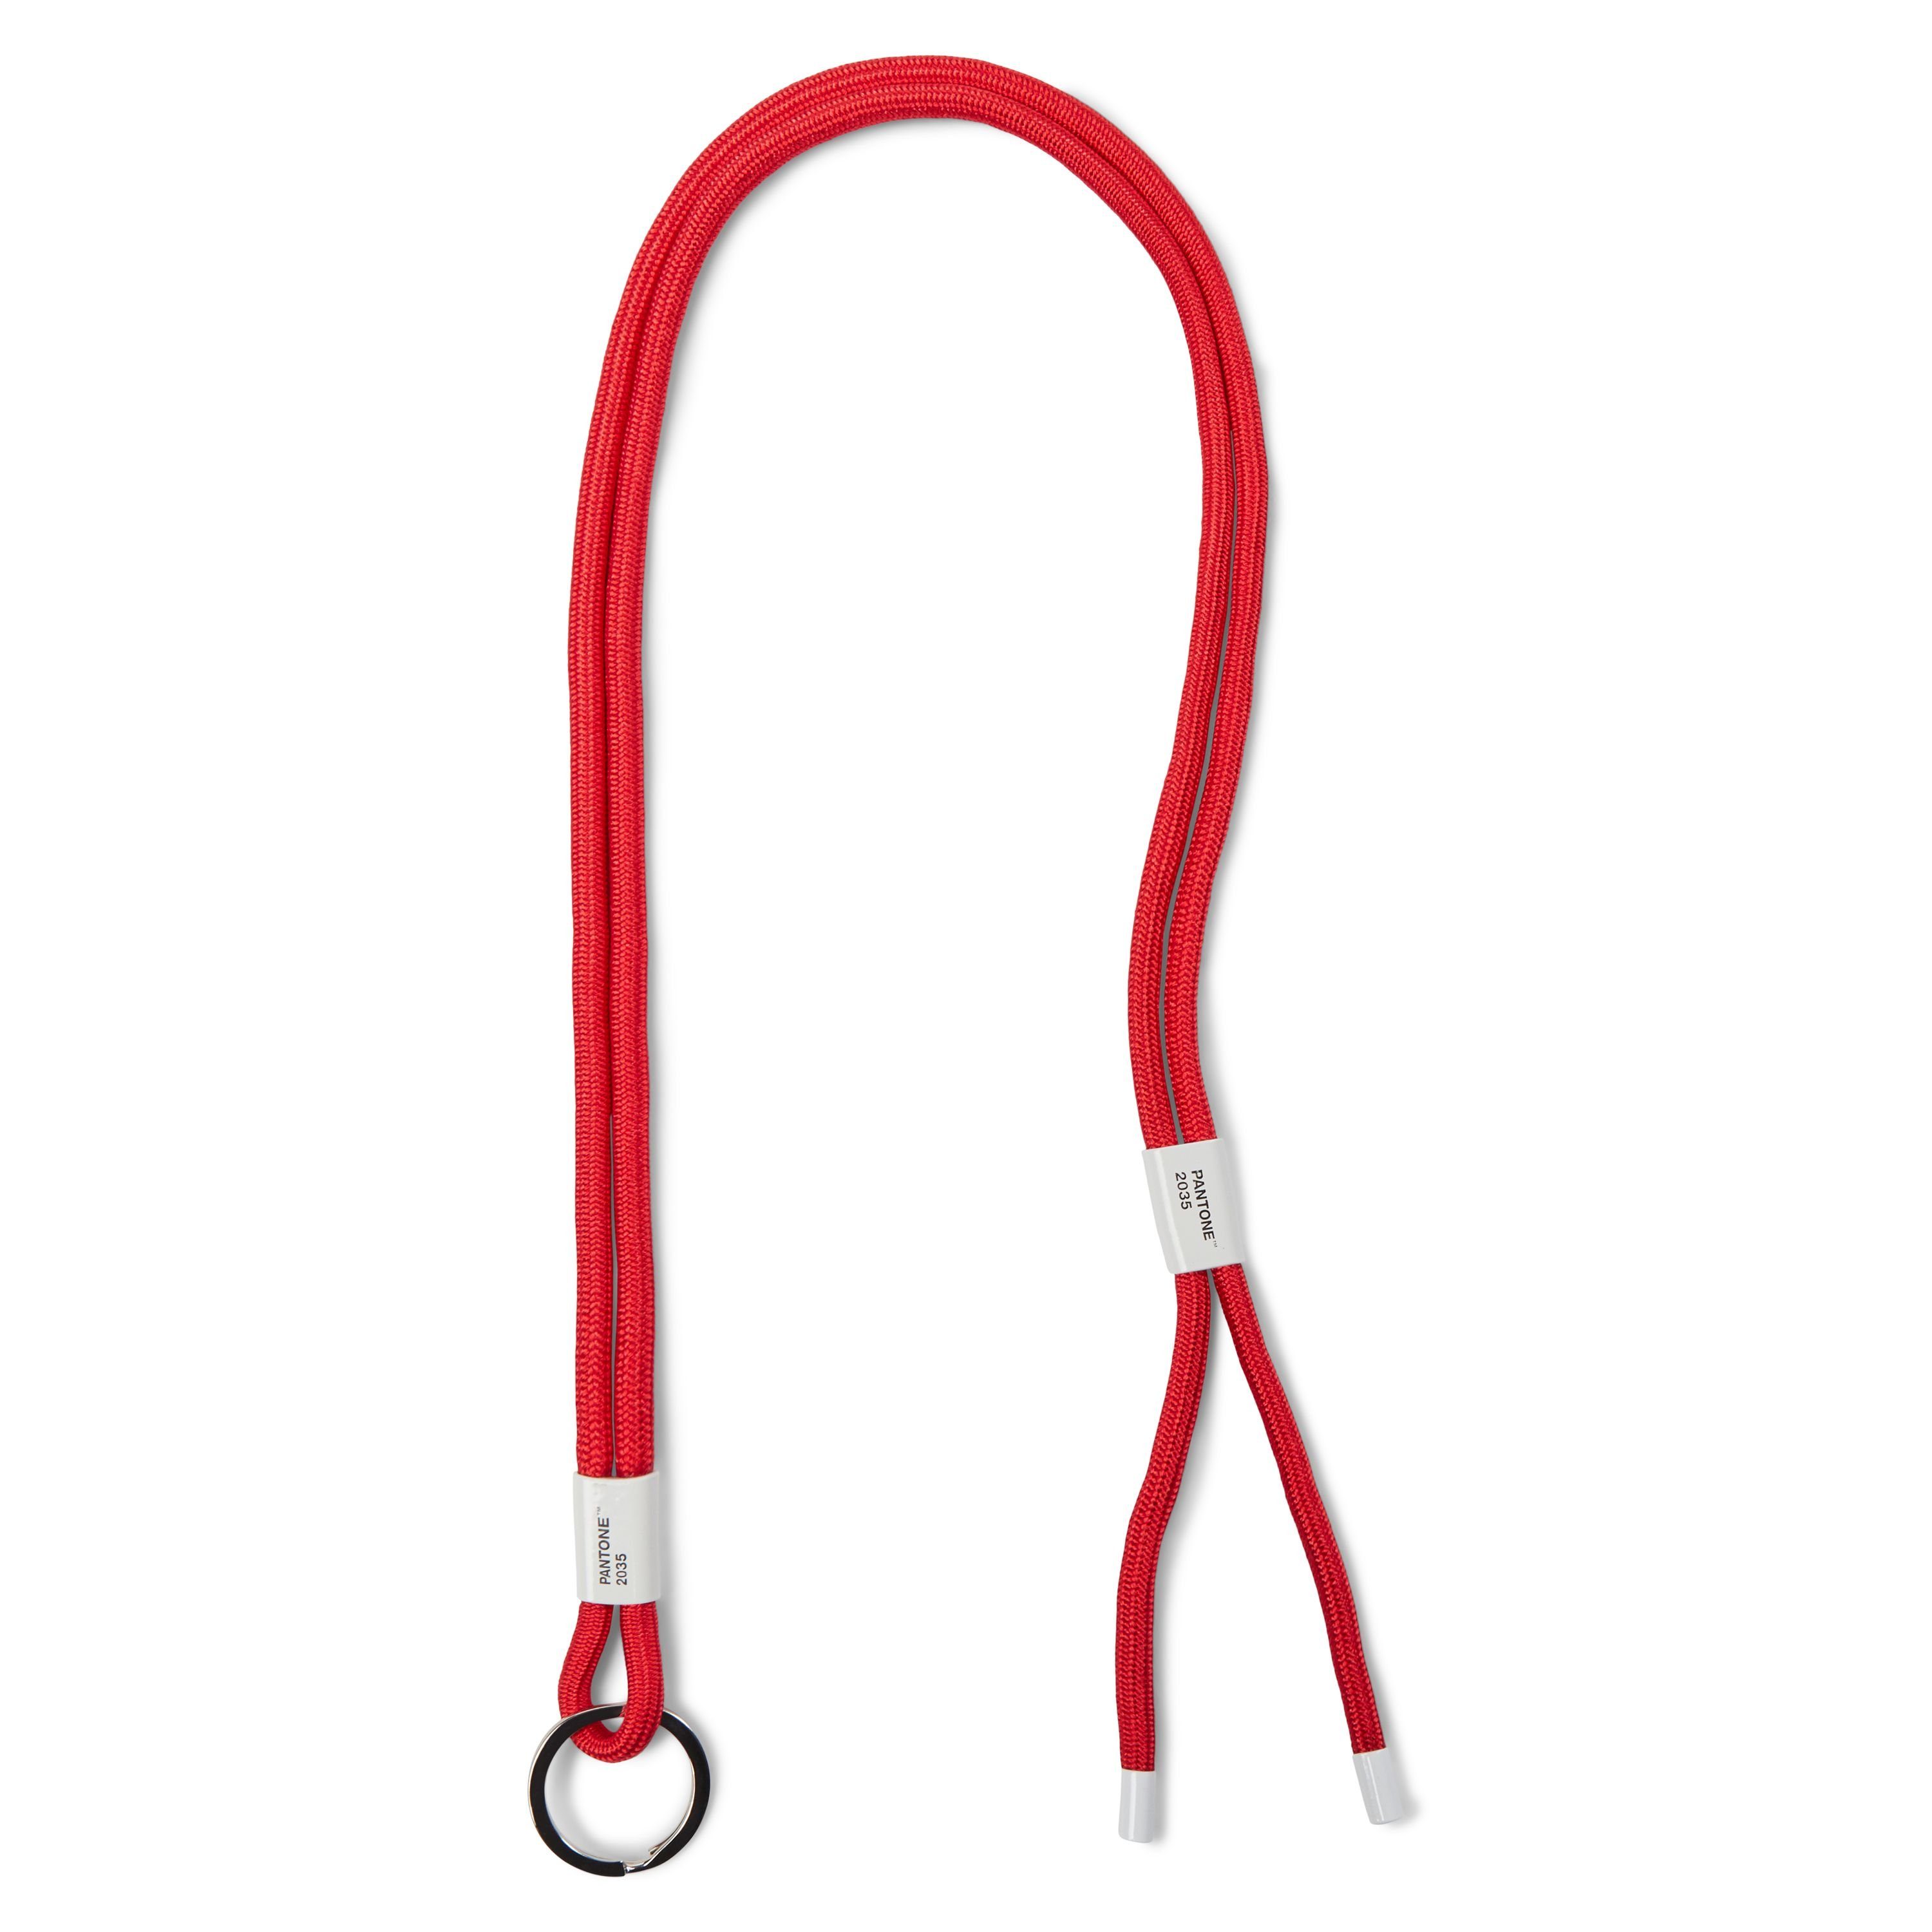 PANTONE Schlüsselanhänger, Design- Schlüsselband Adjustable Lanyard, verstellbar Red 2035